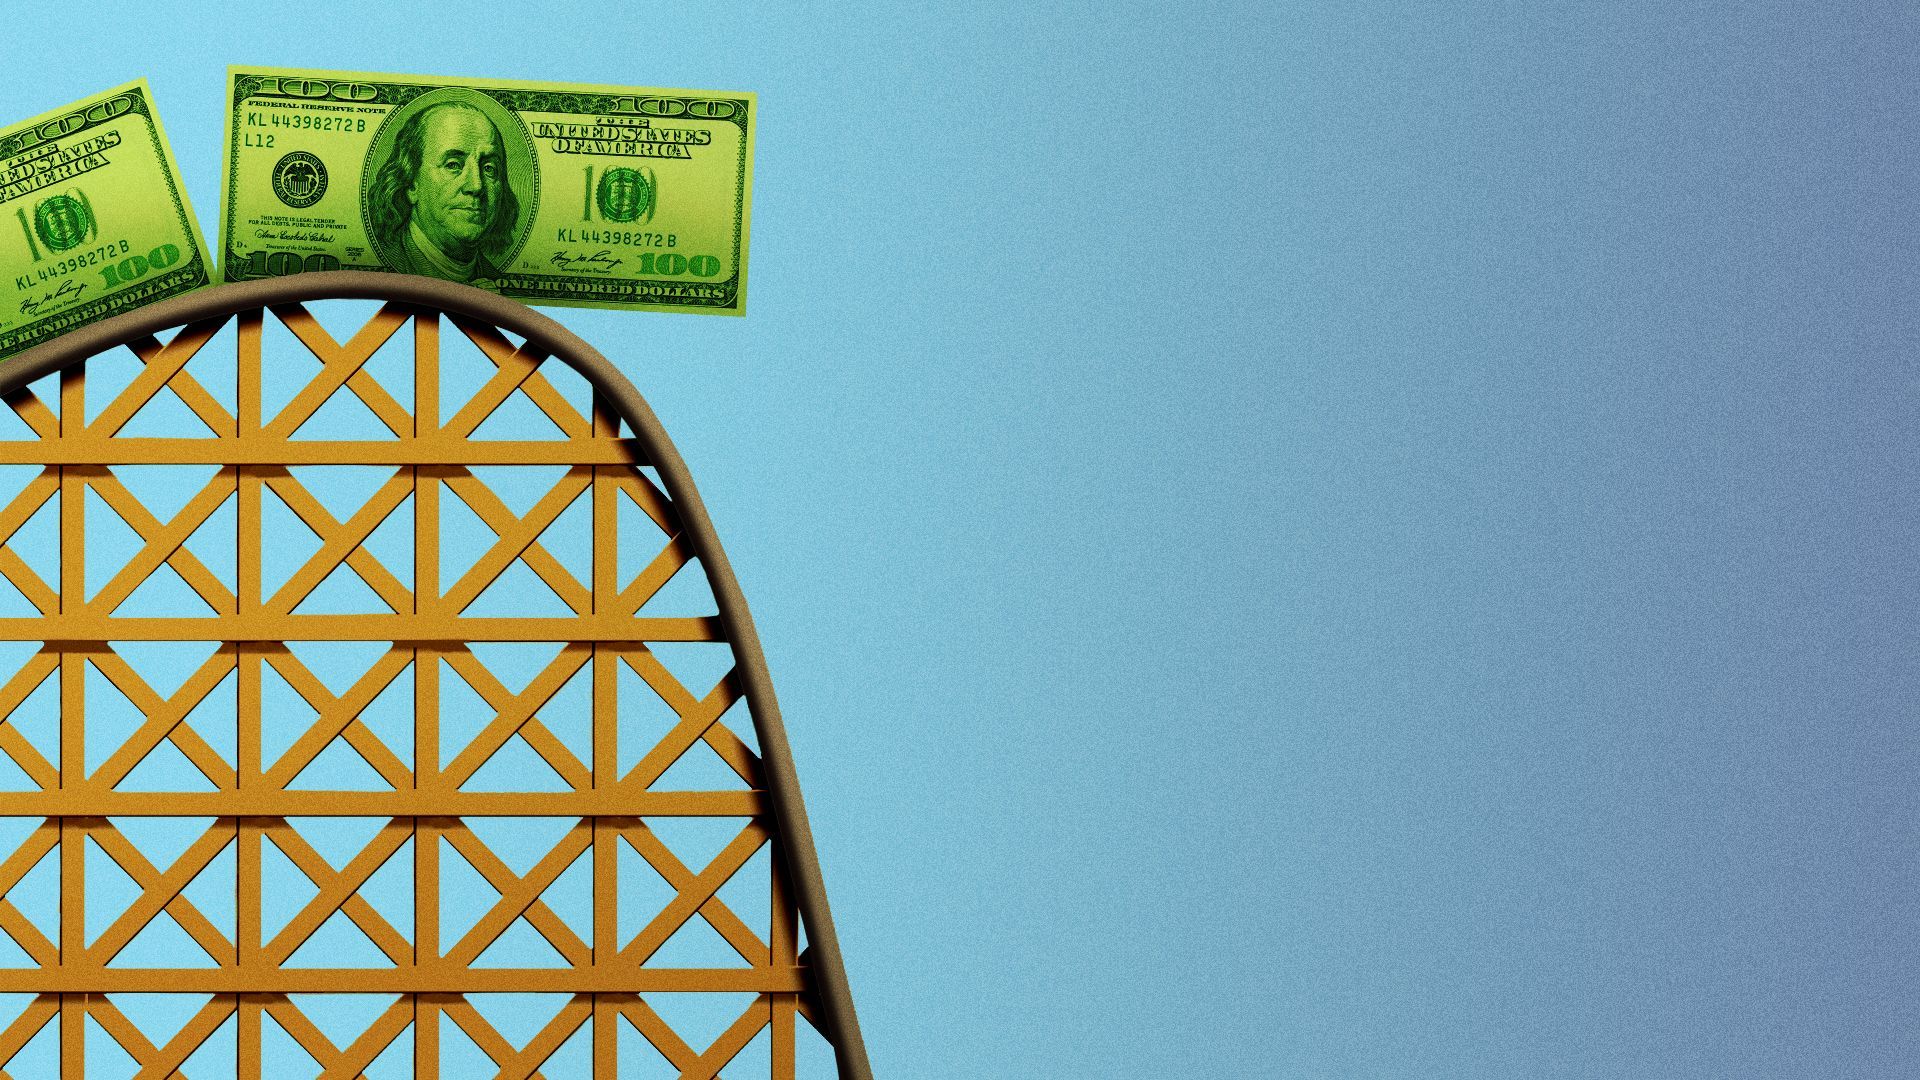 Illustration of dollar bills on a roller coaster track.